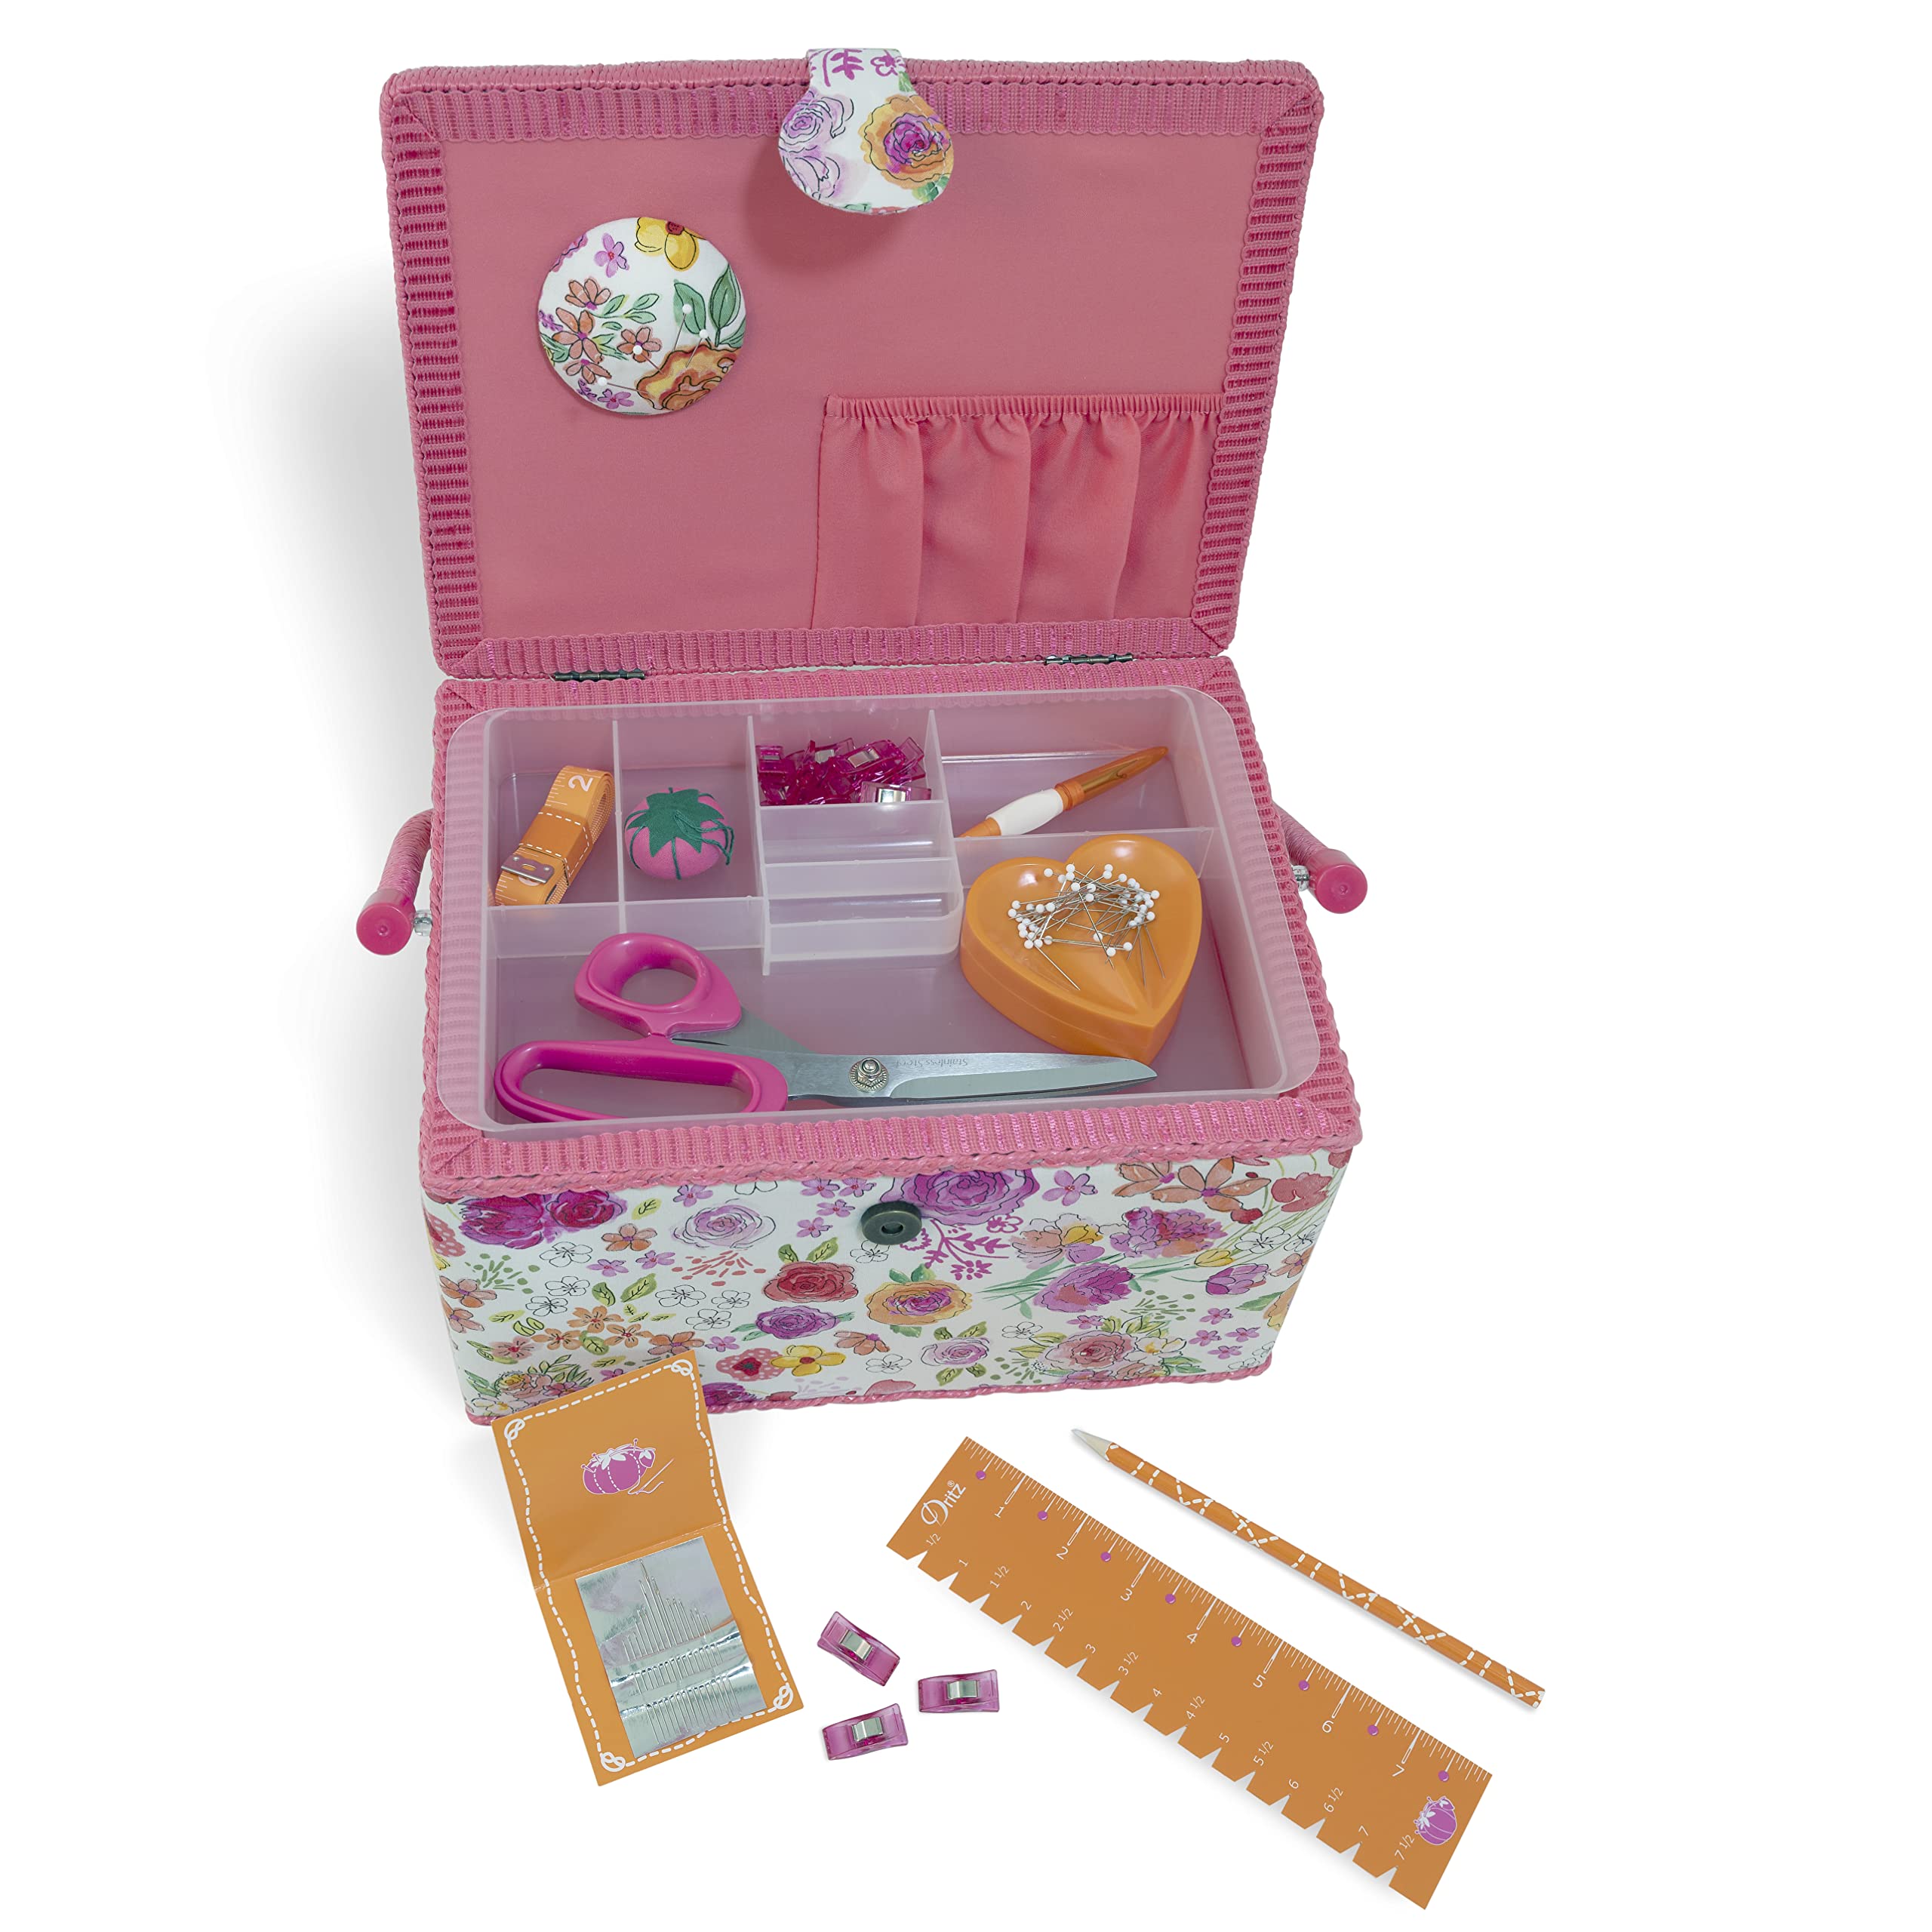 Dritz Large Kit Filled Sewing Basket, Pink & Orange